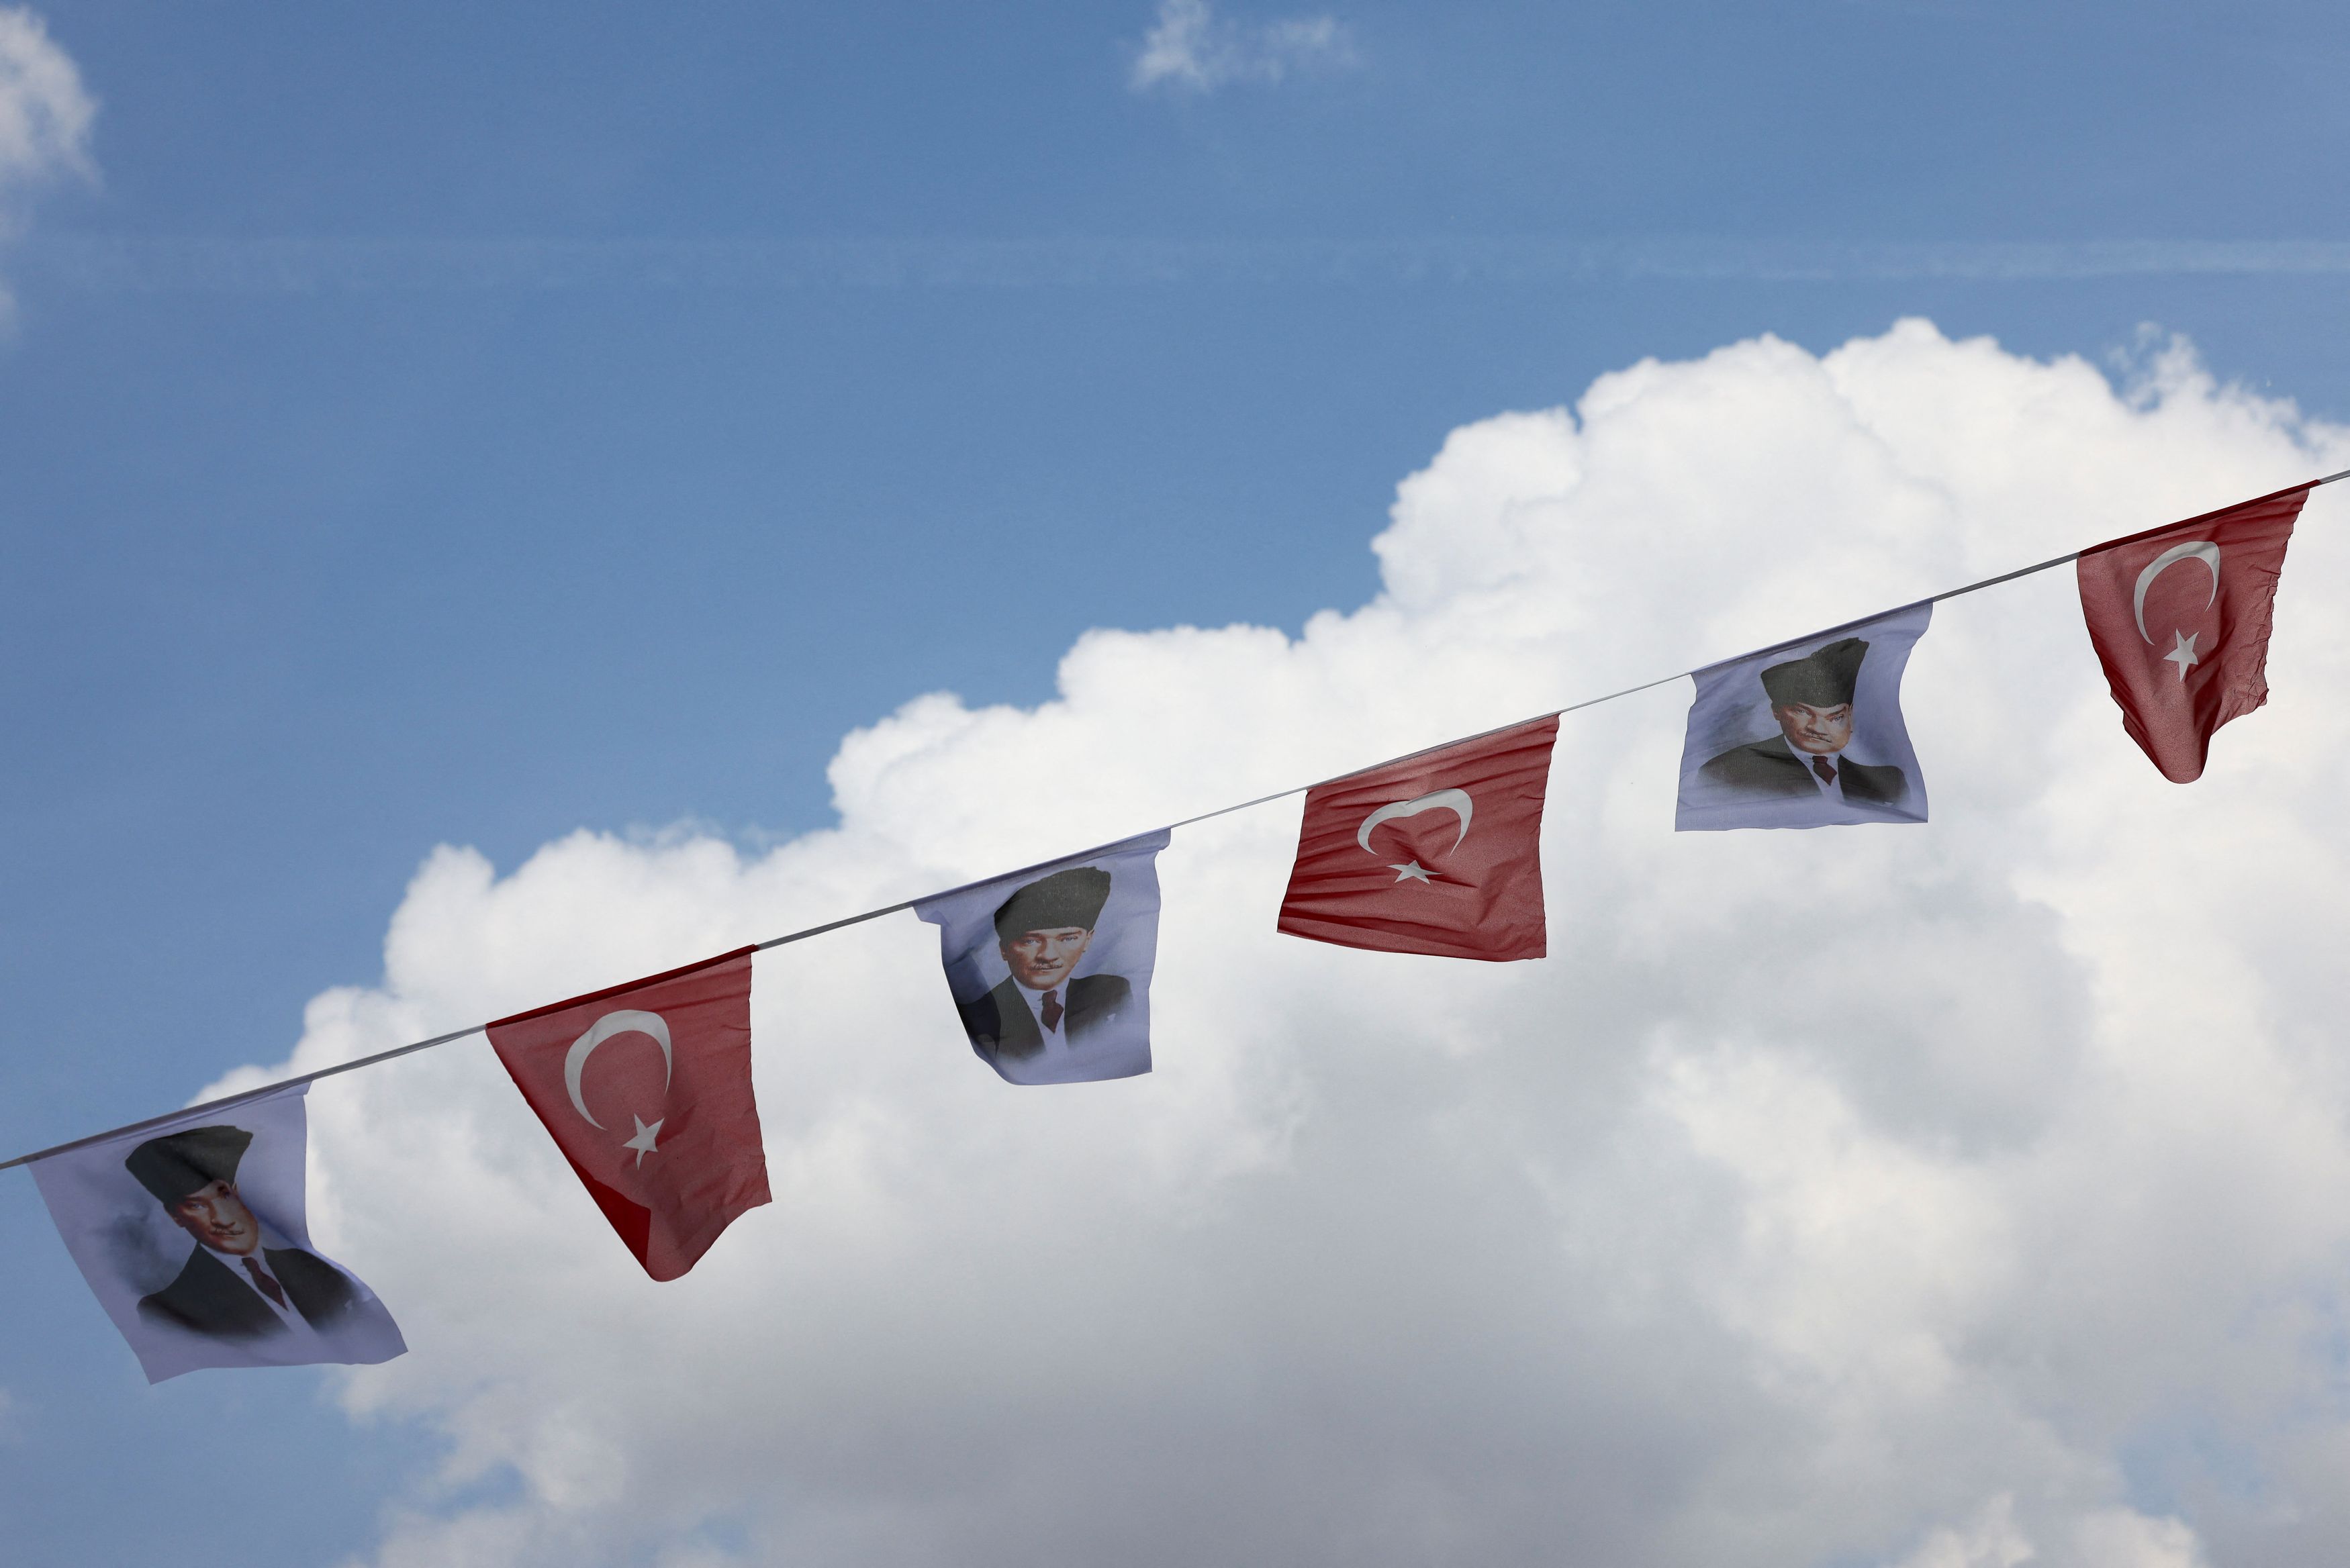 Τουρκικές εκλογές: Το προεκλογικό κλίμα στην Αγκυρα – Τα χαρτιά των υποψηφίων